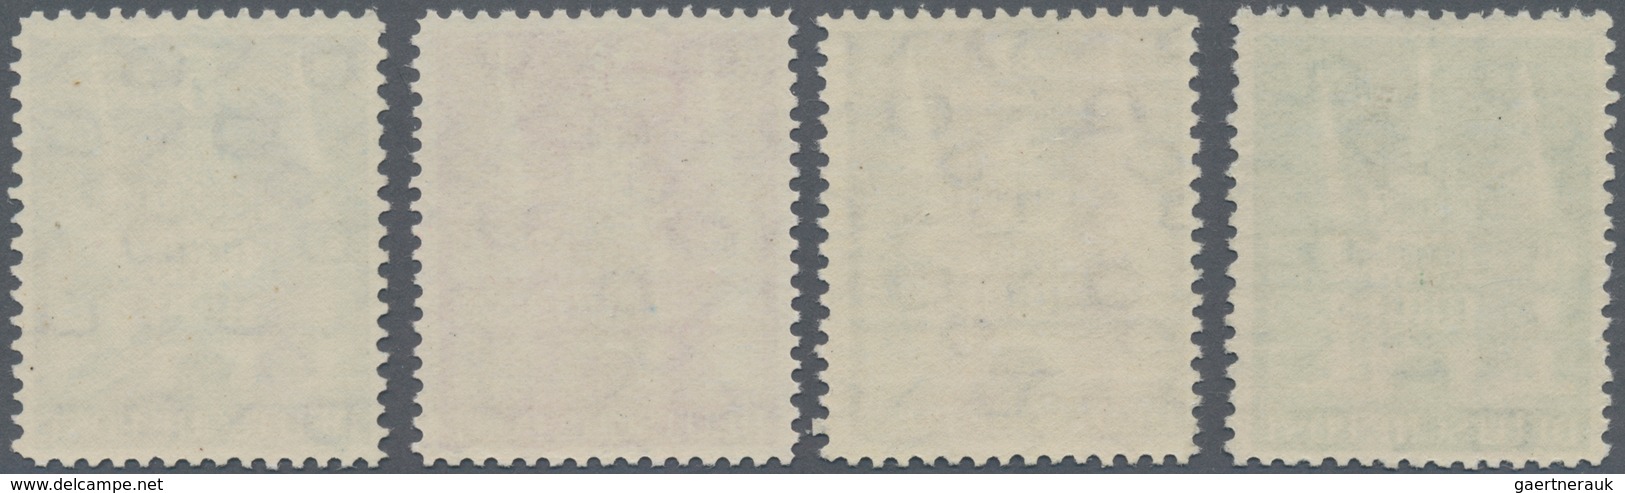 Bizone: 1948/52, Bauten Serie, überkompletter postfrischer Satz (gesamt 47 Werte) in enger und weite